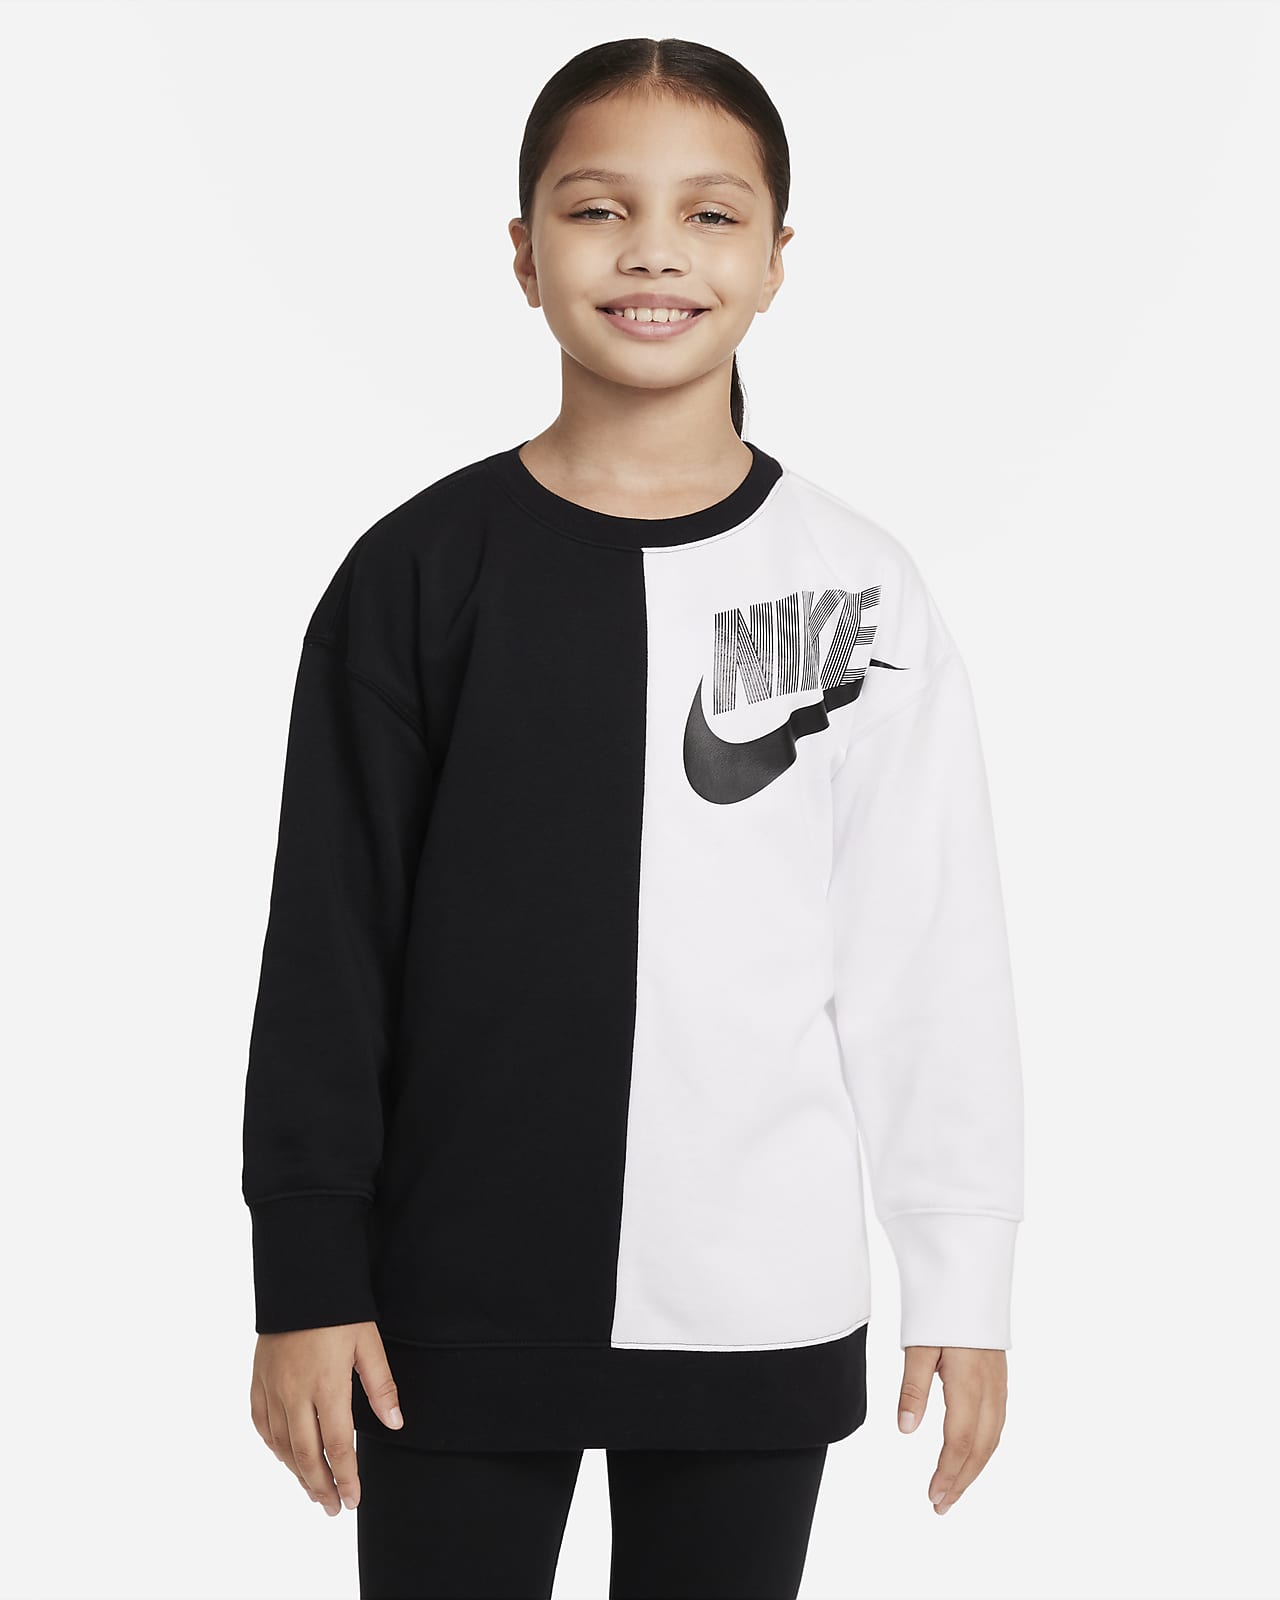 Nike Sportswear Older Kids' (Girls') Dance Sweatshirt